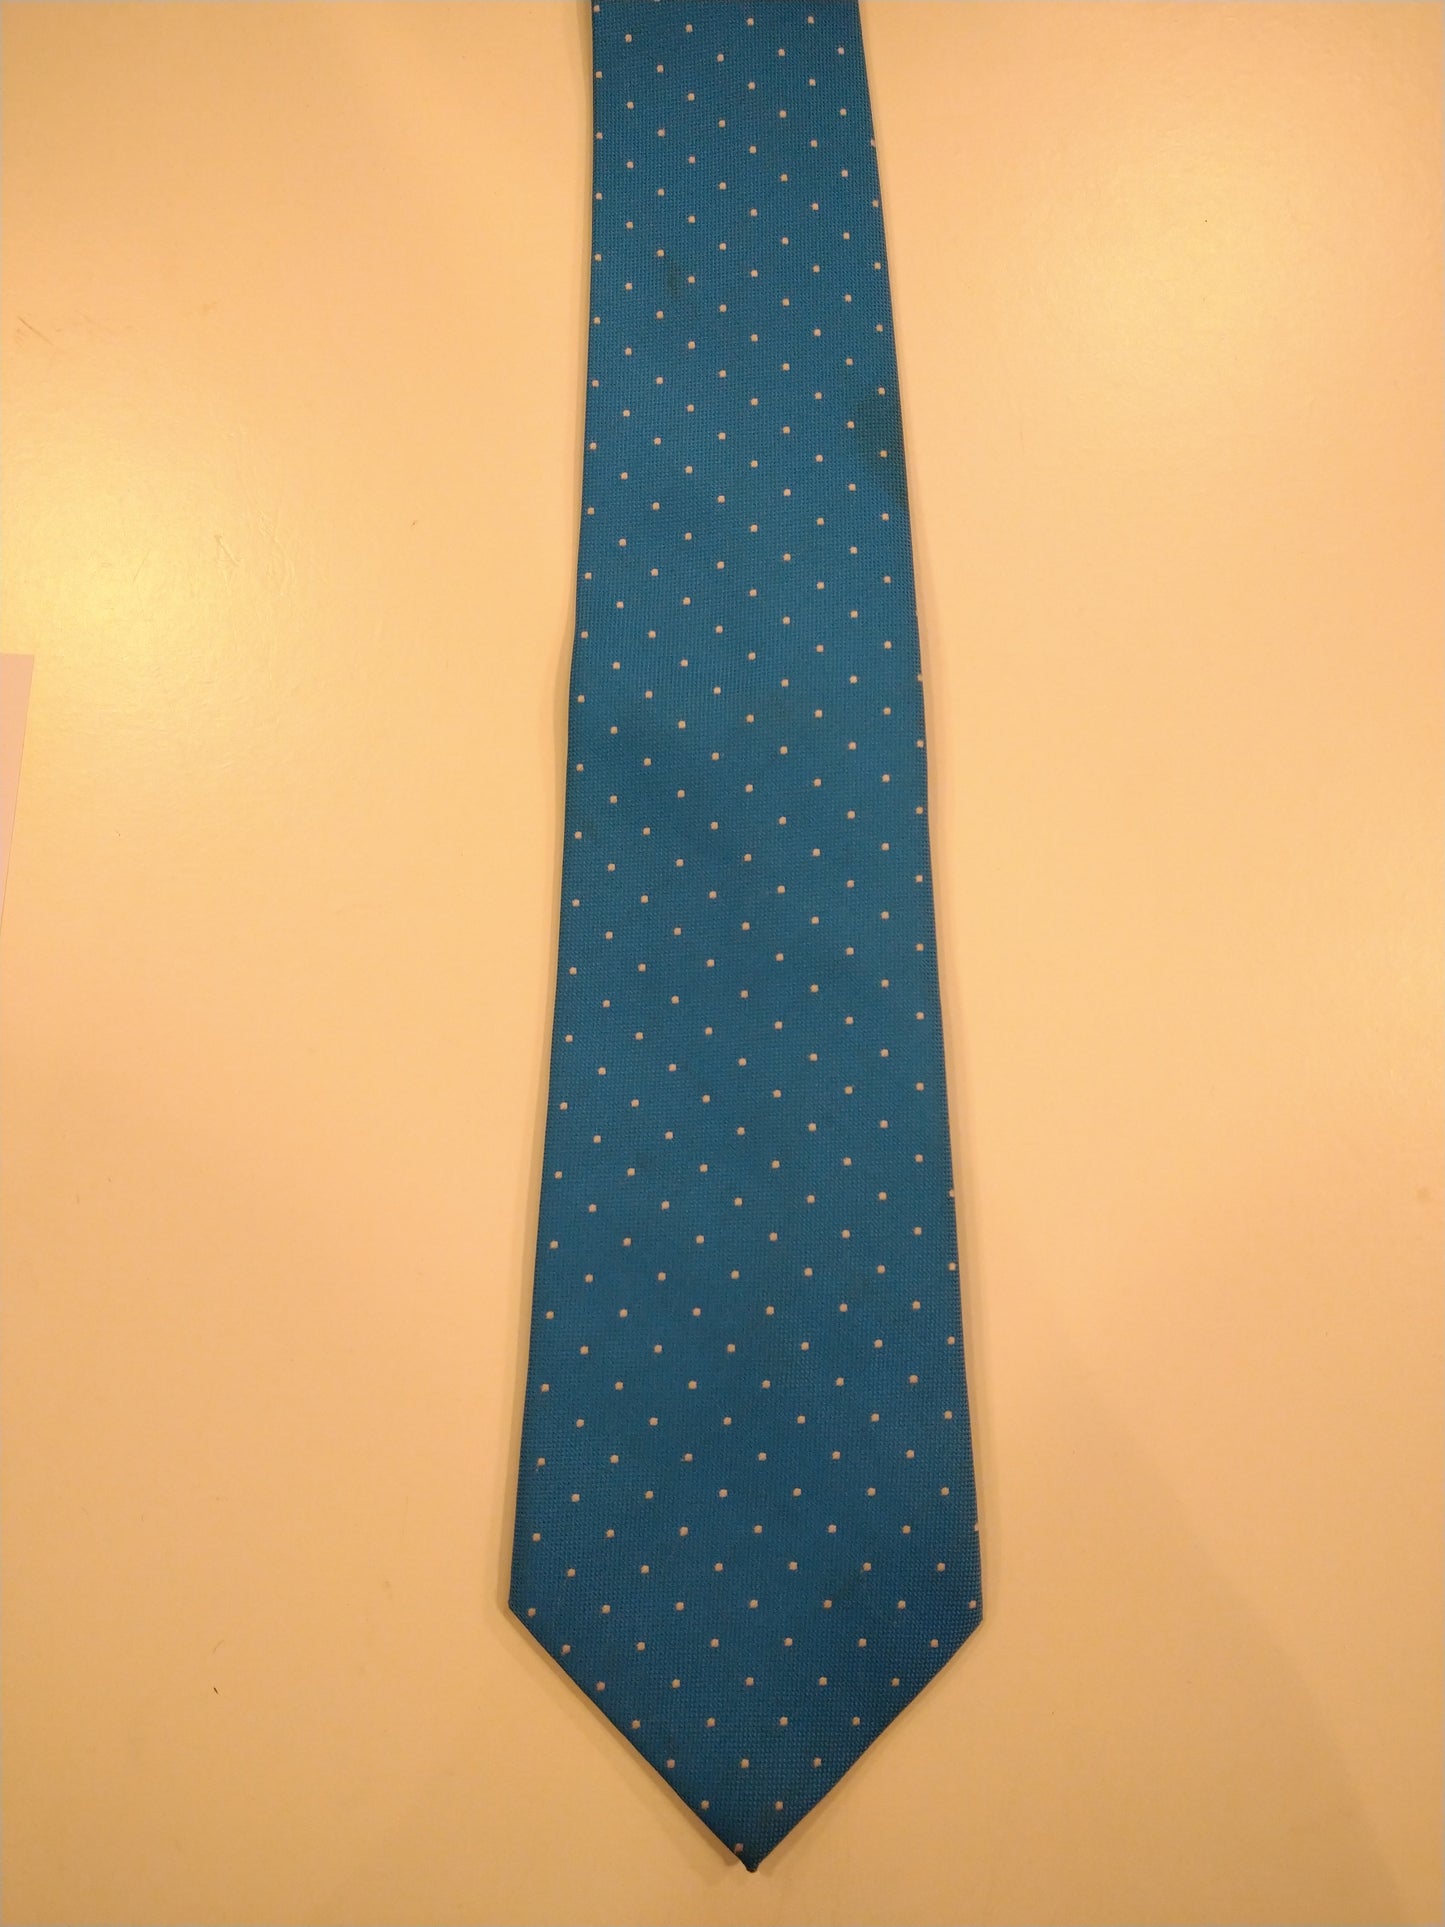 La corbata artigianale de Ladazione. Motivo de punto blanco azul.